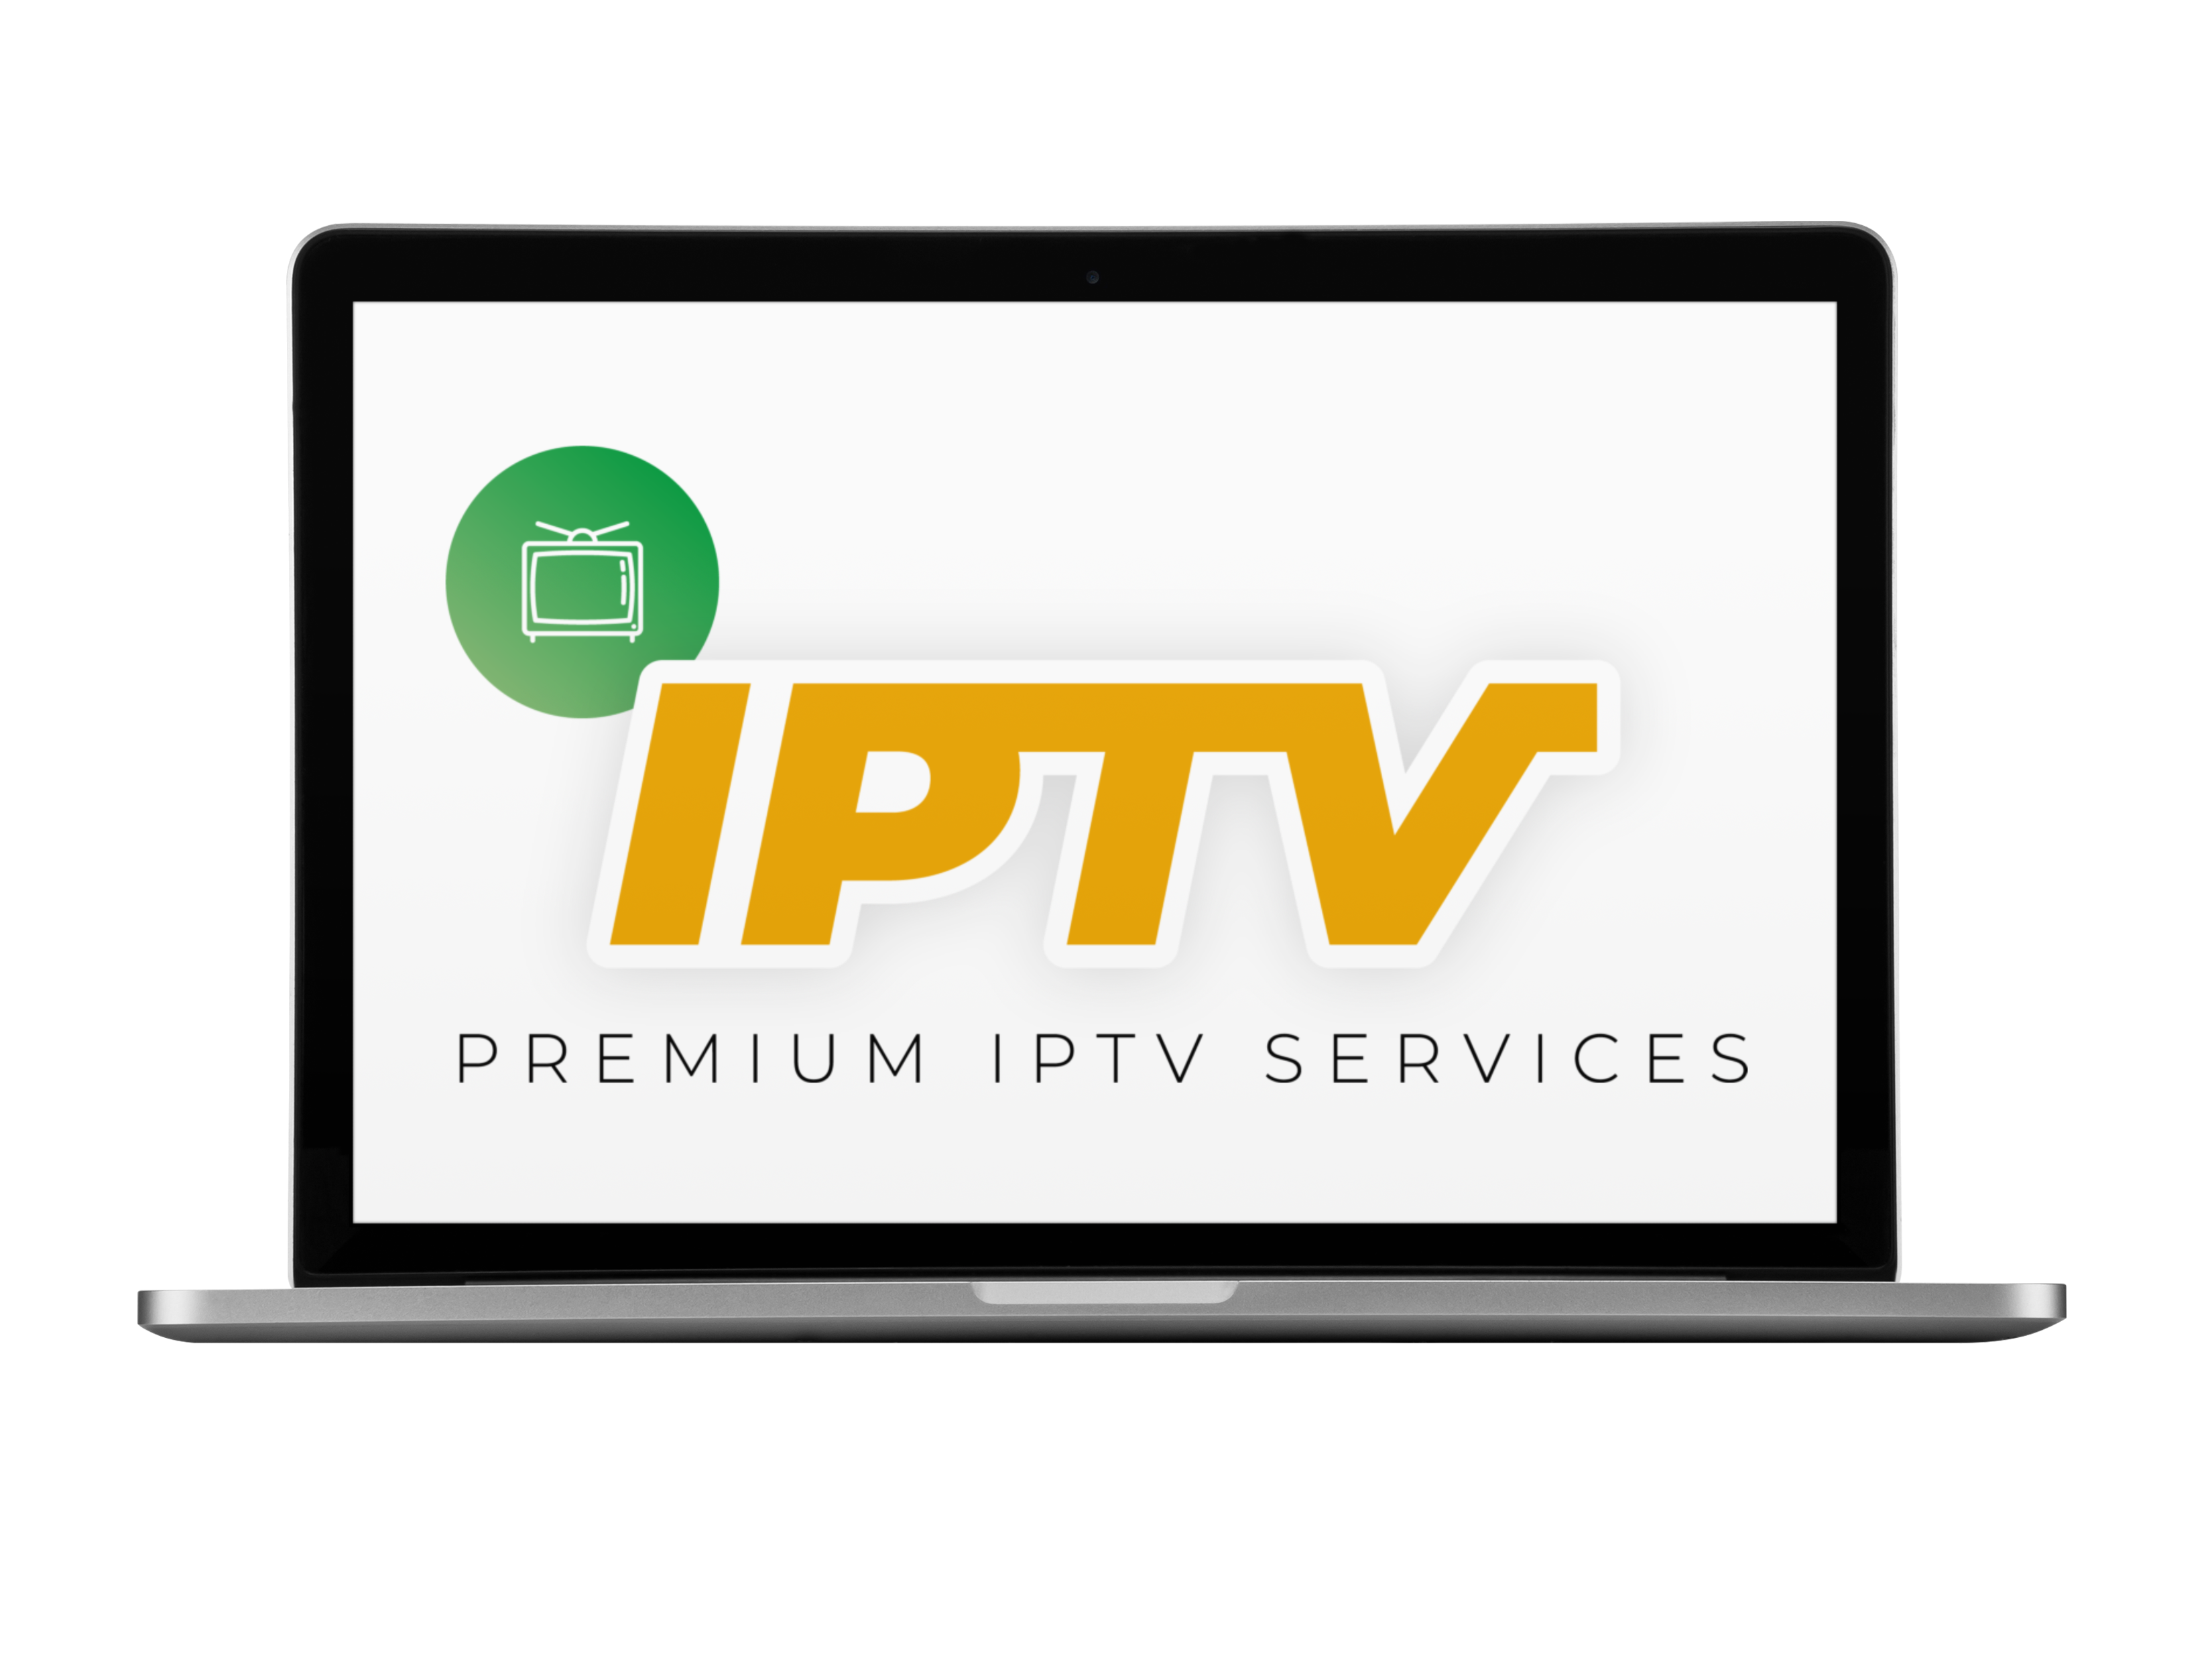 Premium Iptv Services